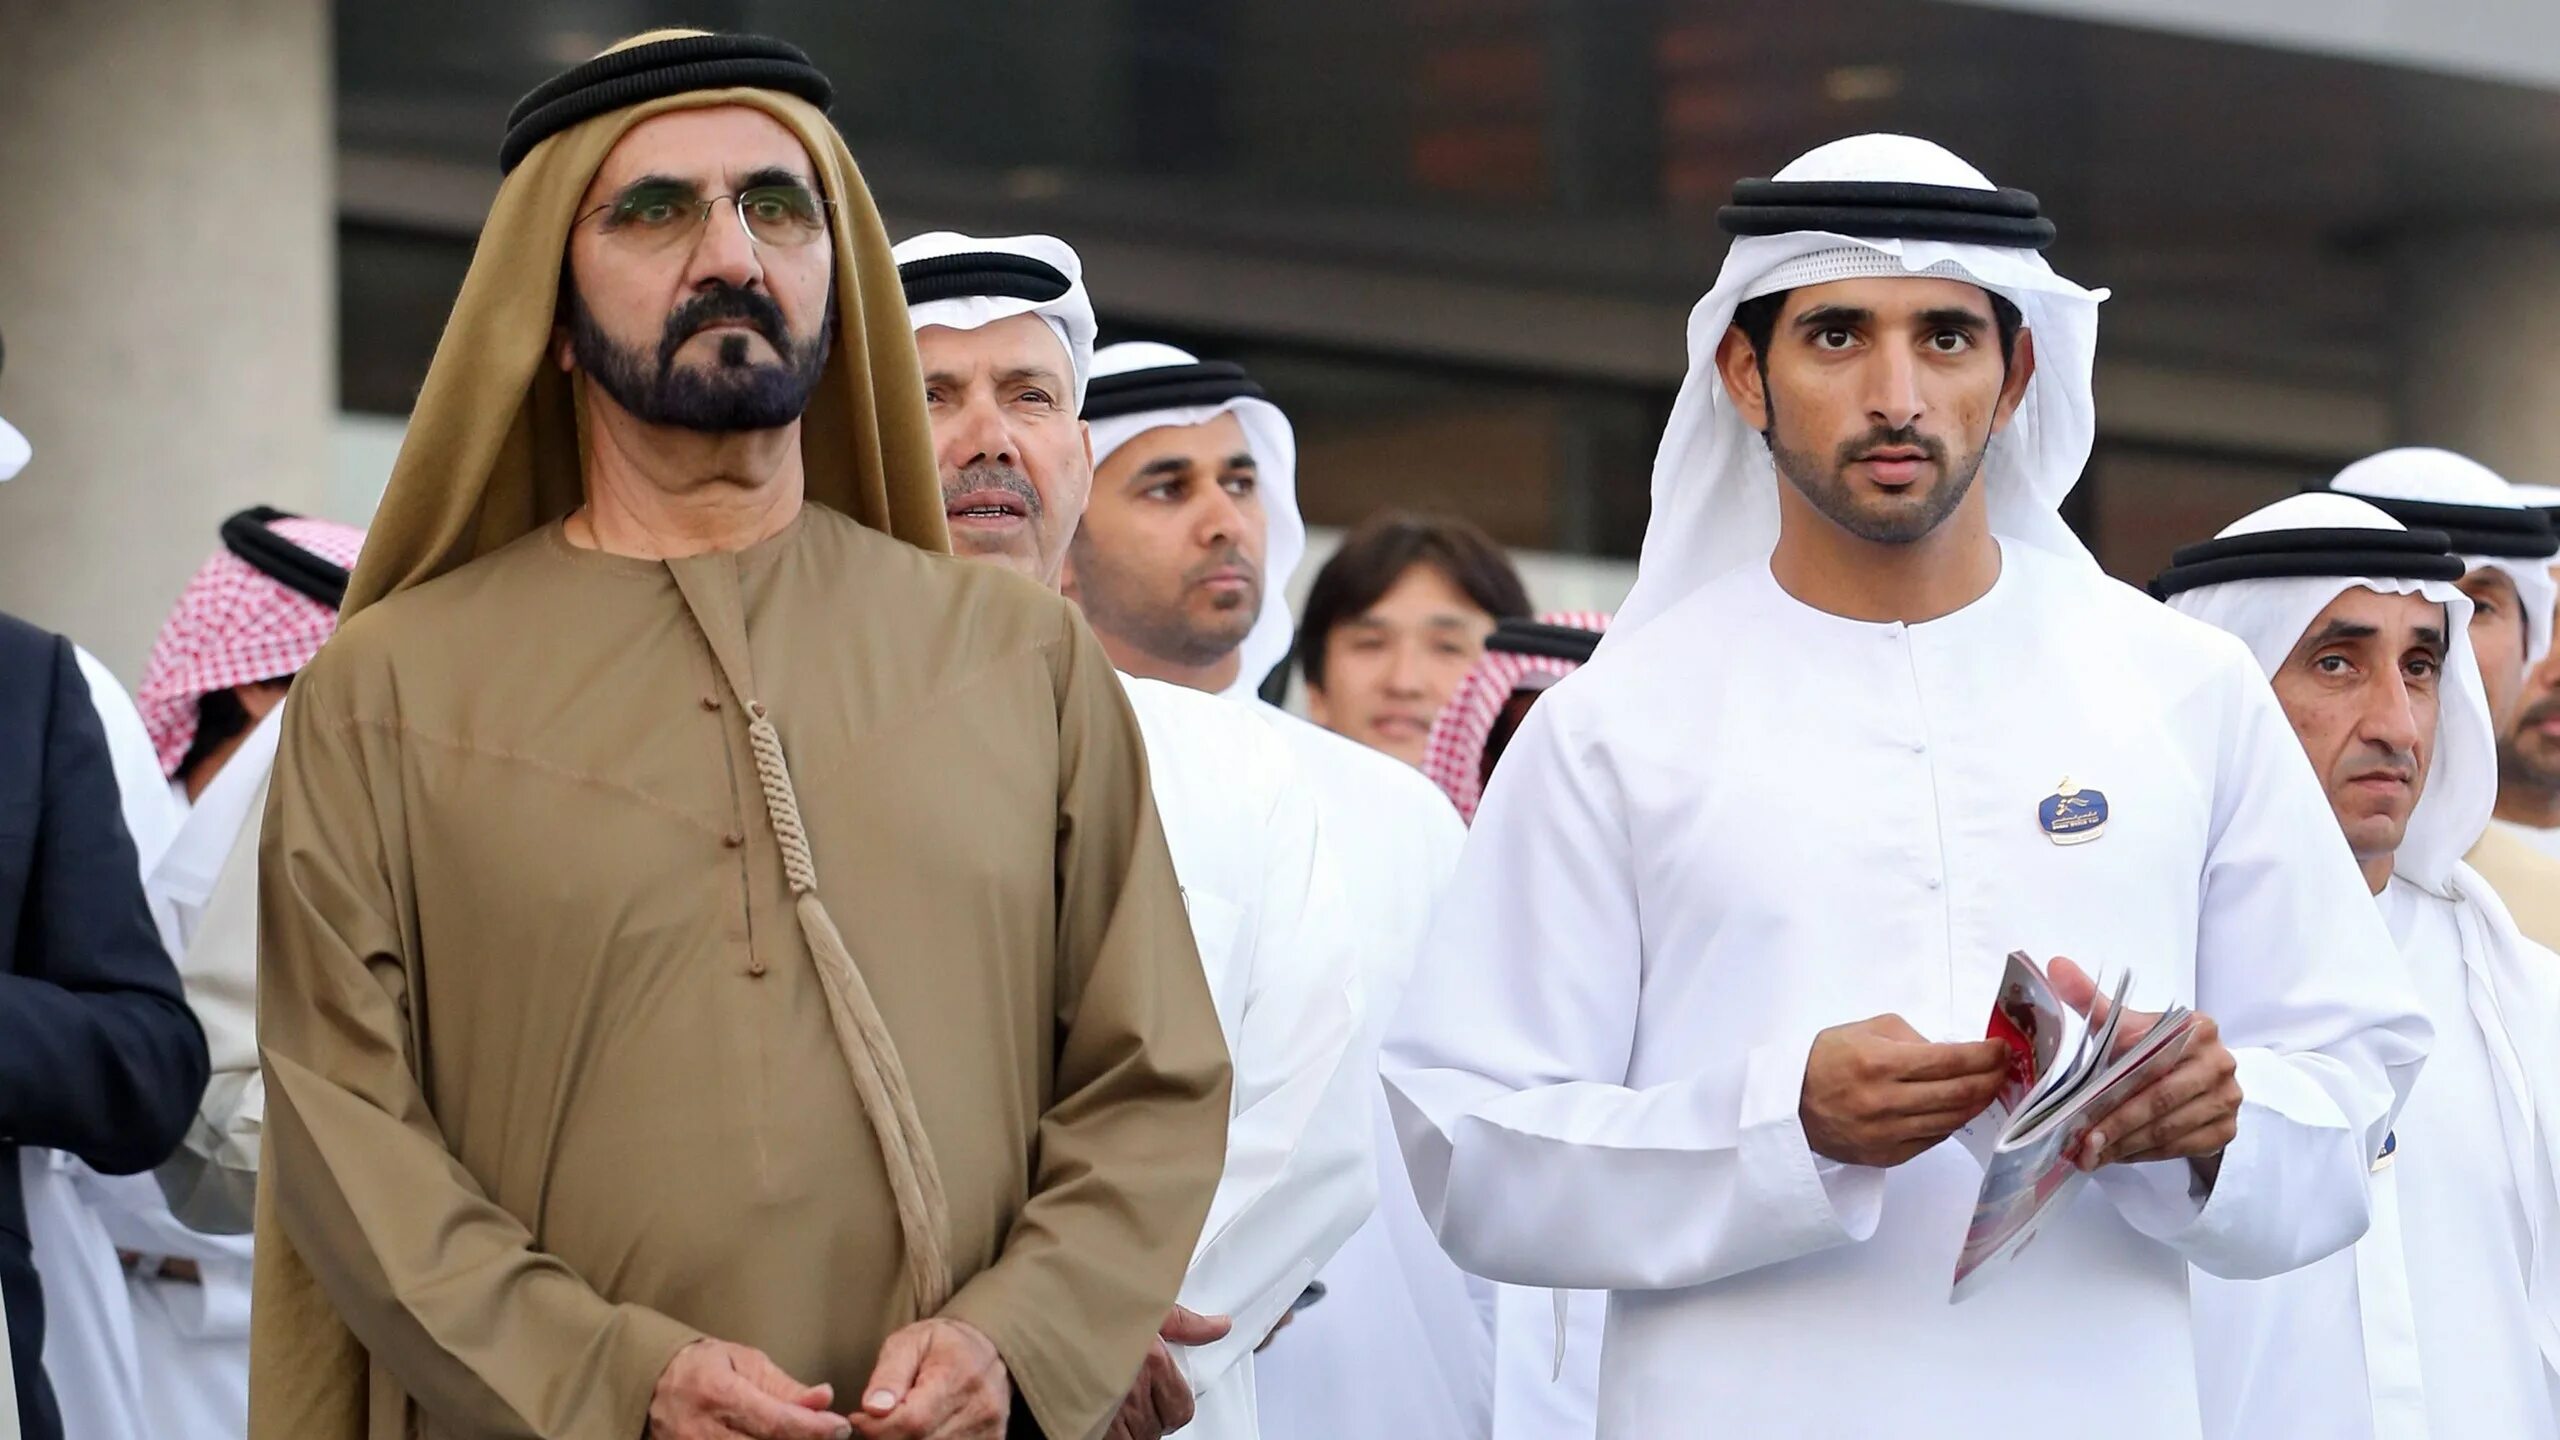 Хамдан ибн Мохаммед Аль Мактум принц Дубая. Дубайский шейх